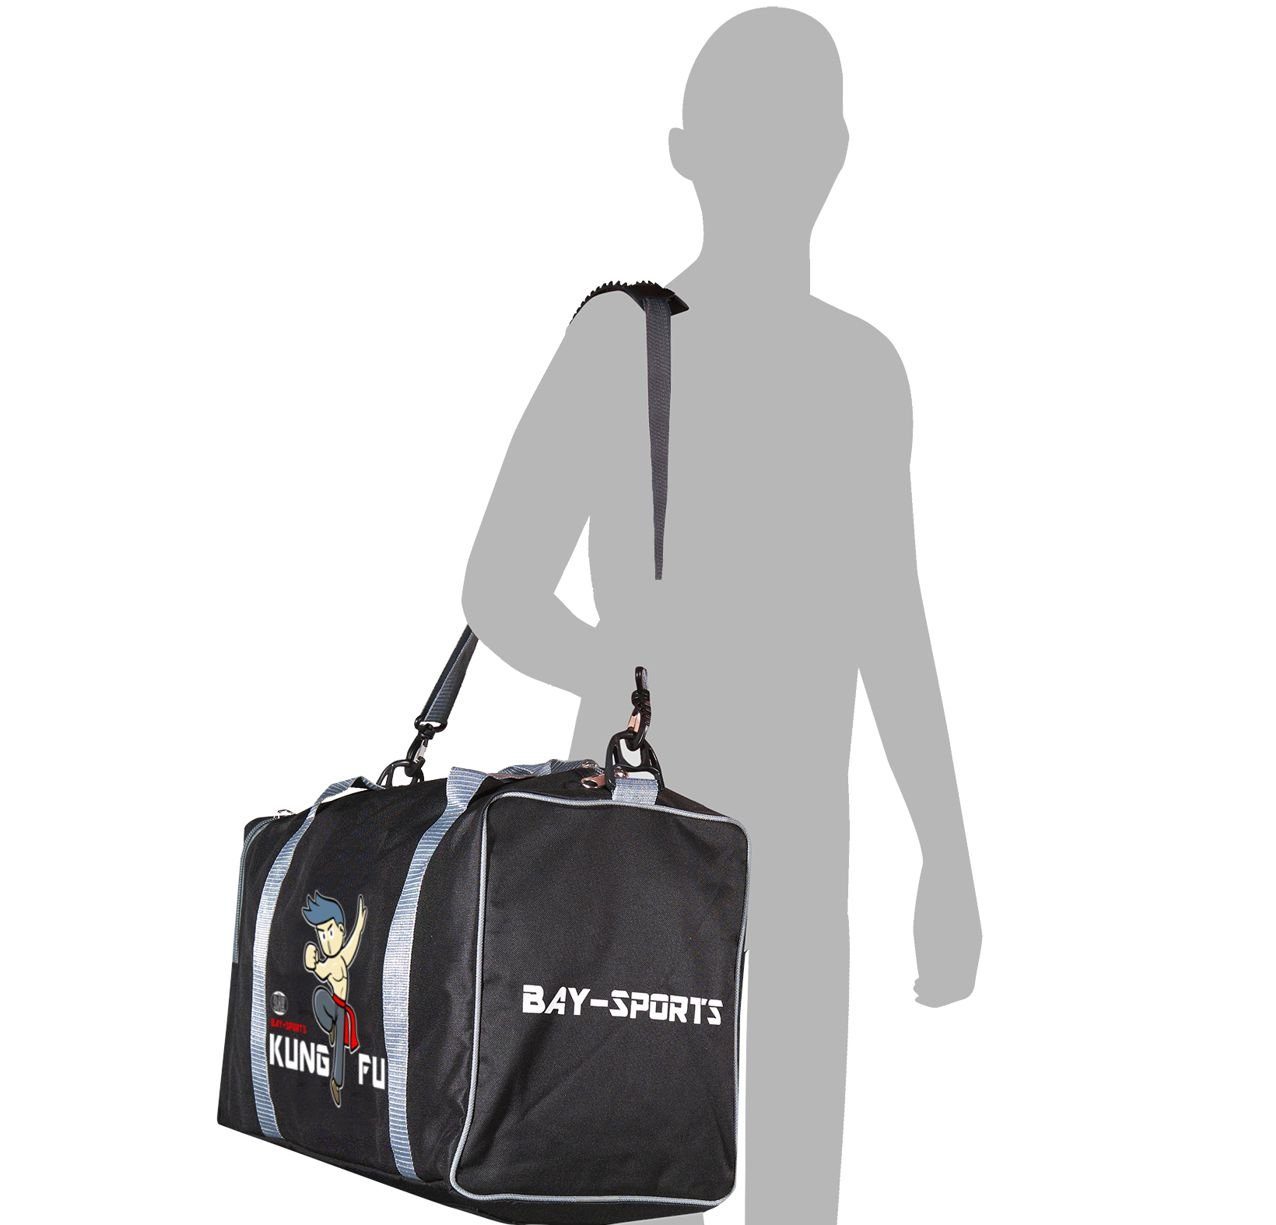 50 cm schwarz/grau Sporttasche Kinder für Sporttasche Fu Kung BAY-Sports